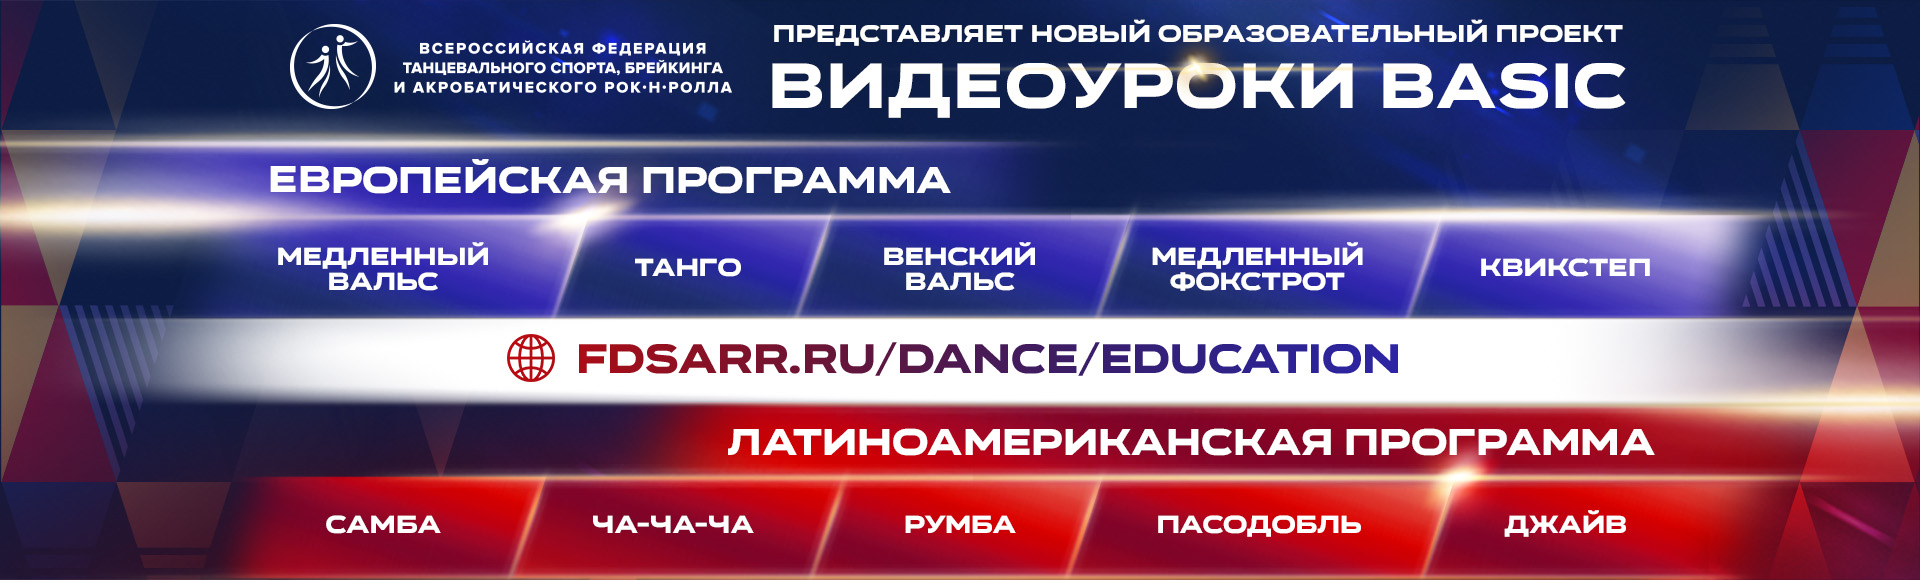 Танцевальный спорт - Всероссийская федерация танцевального спорта,  брейкинга и акробатического рок-н-ролла